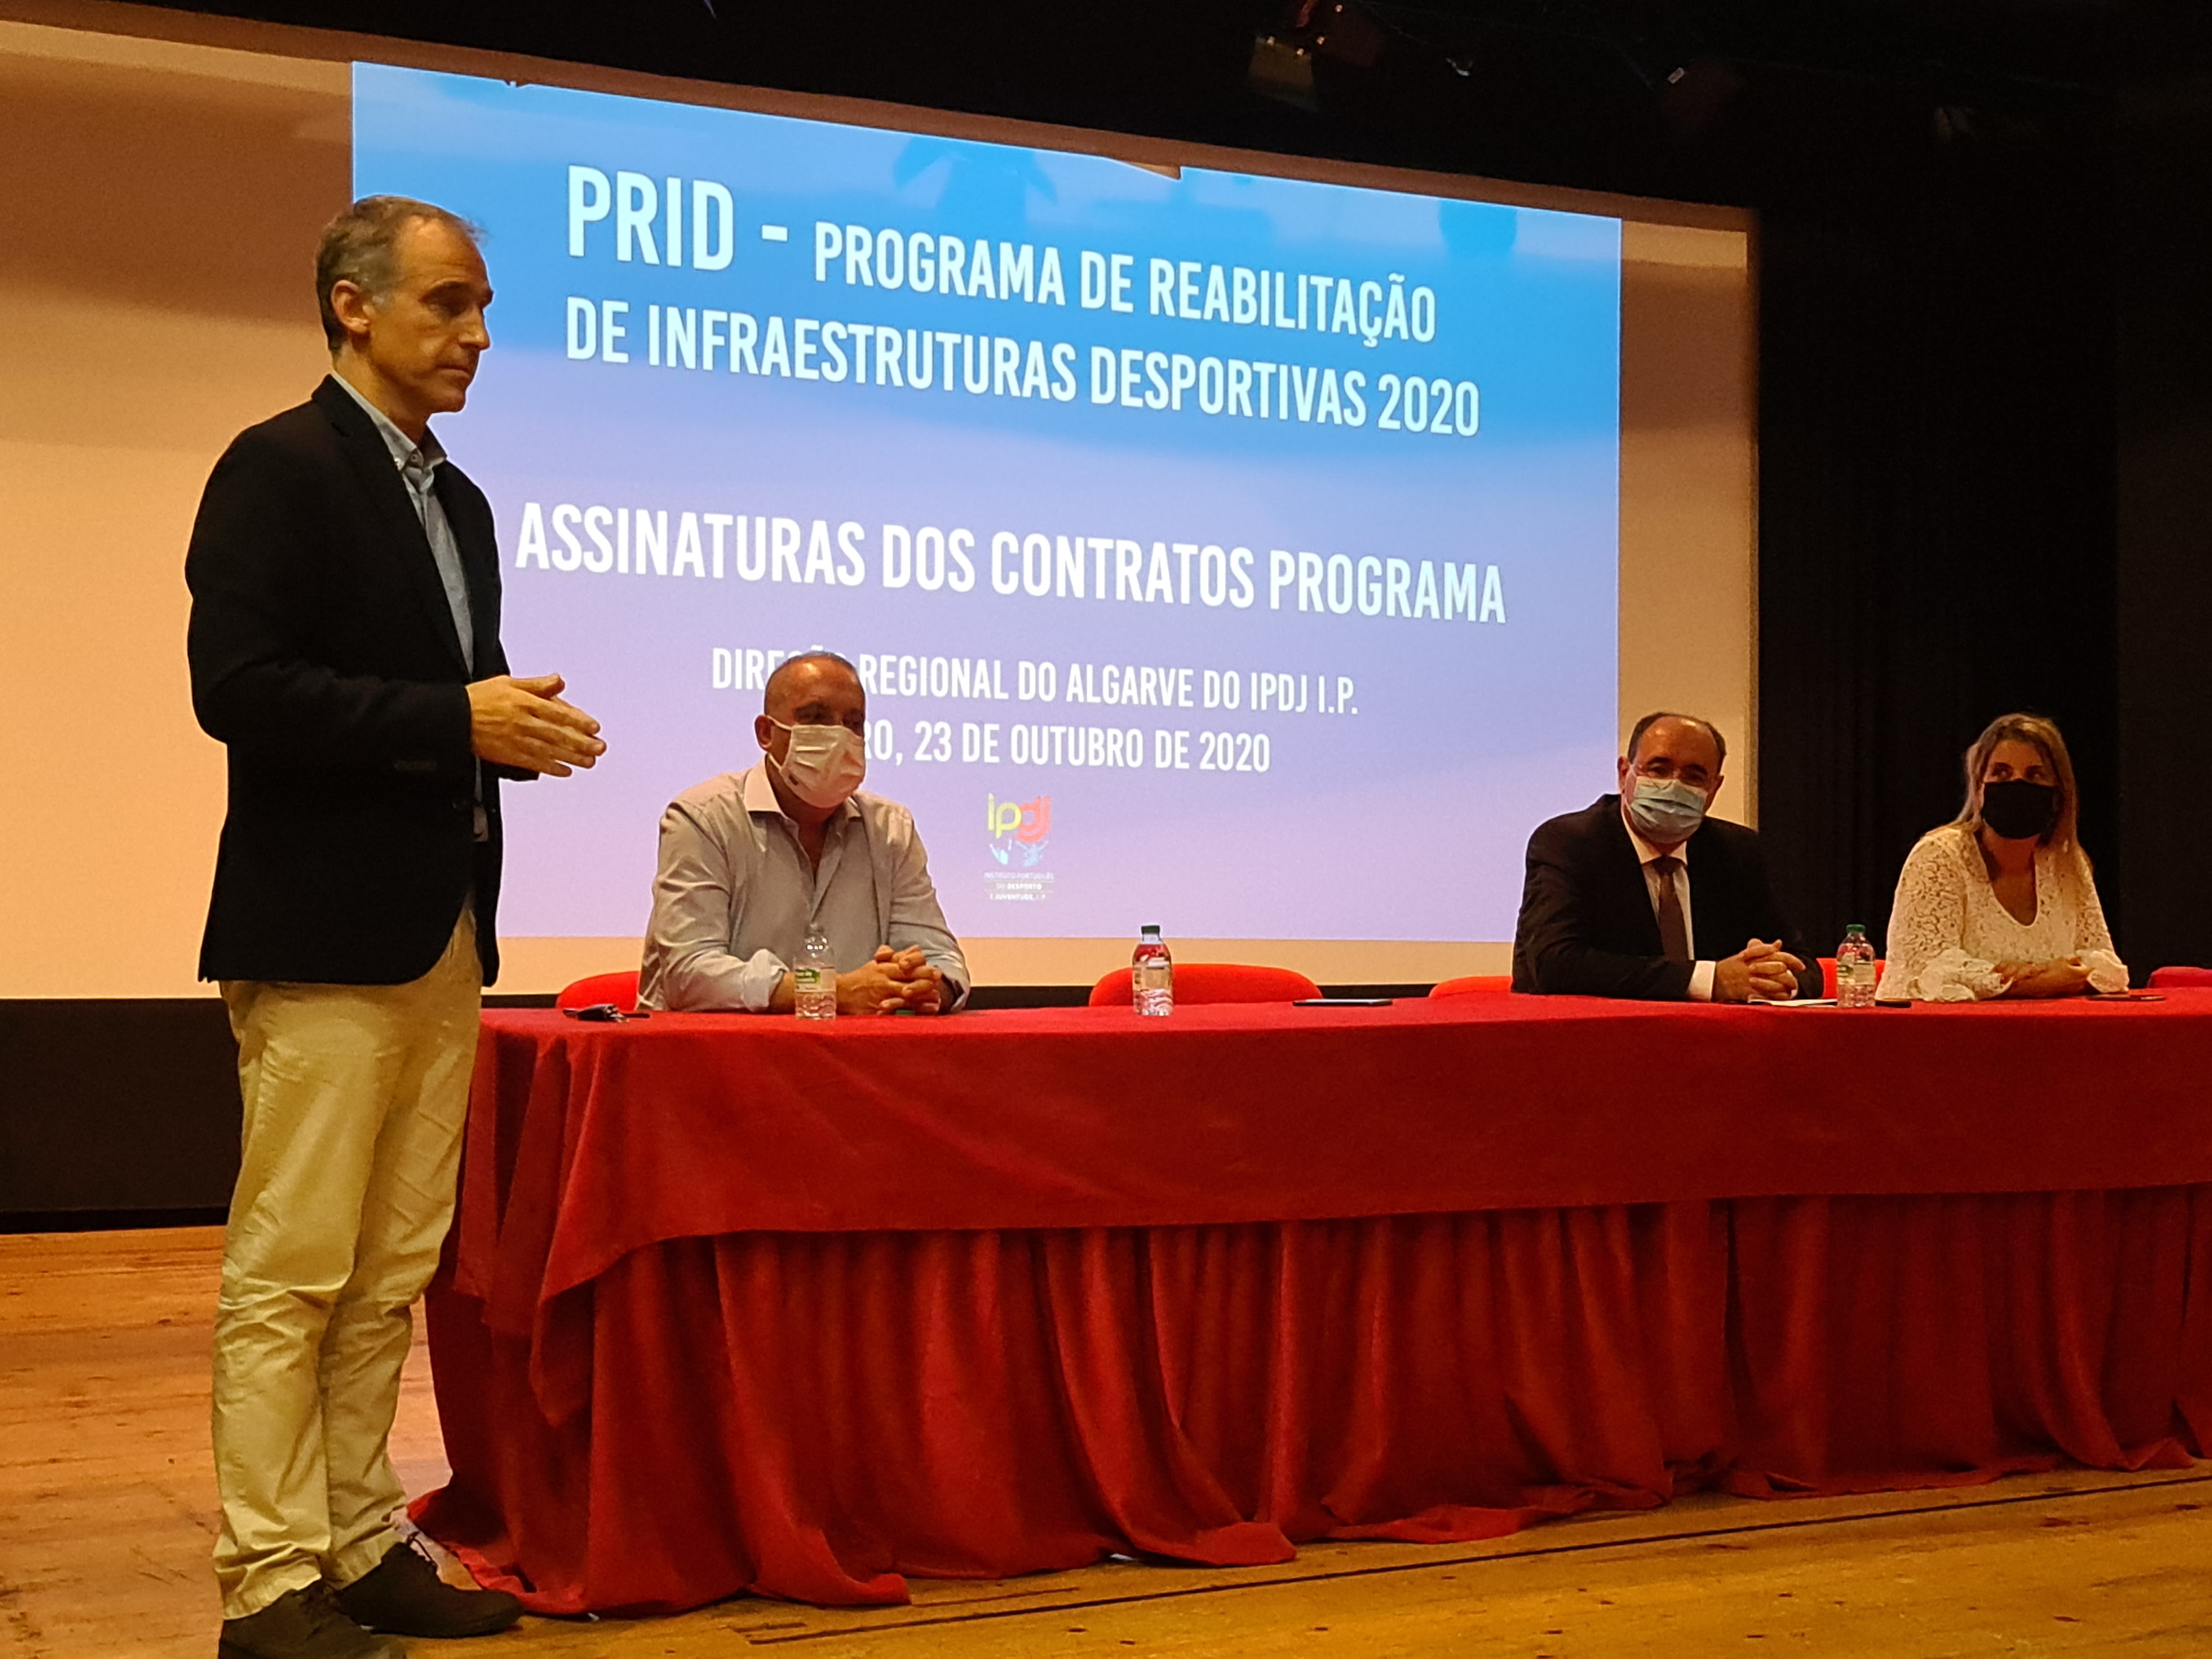 Assinatura dos contratos programa do PRID 2020 no Algarve